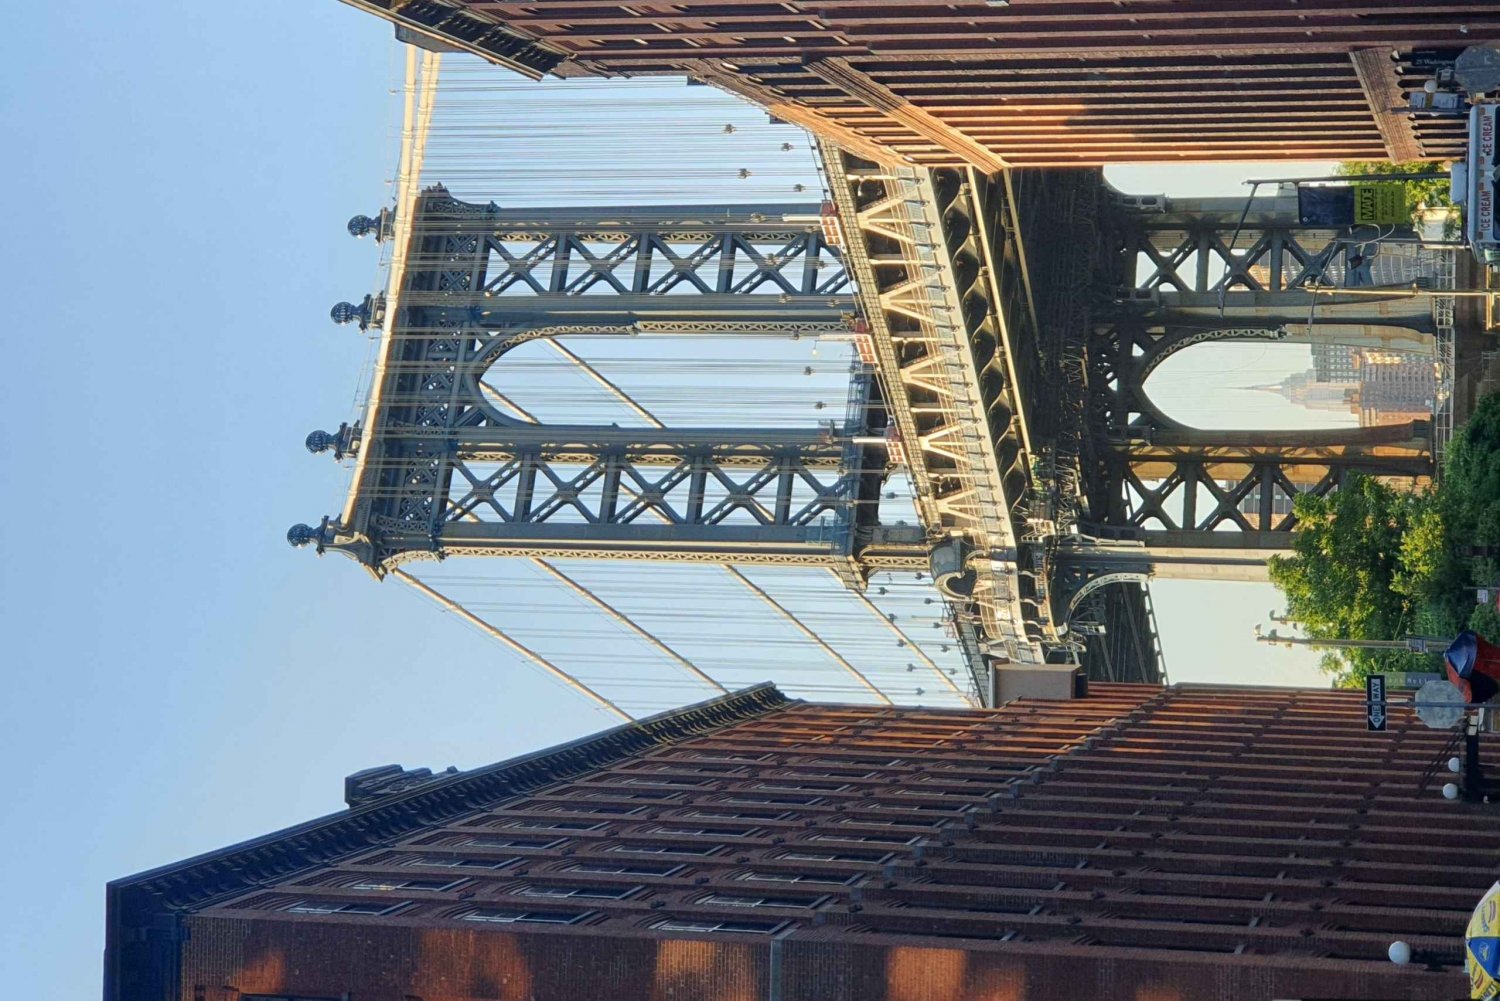 NYC: Byvandring i Dumbo og på Brooklyn Bridge